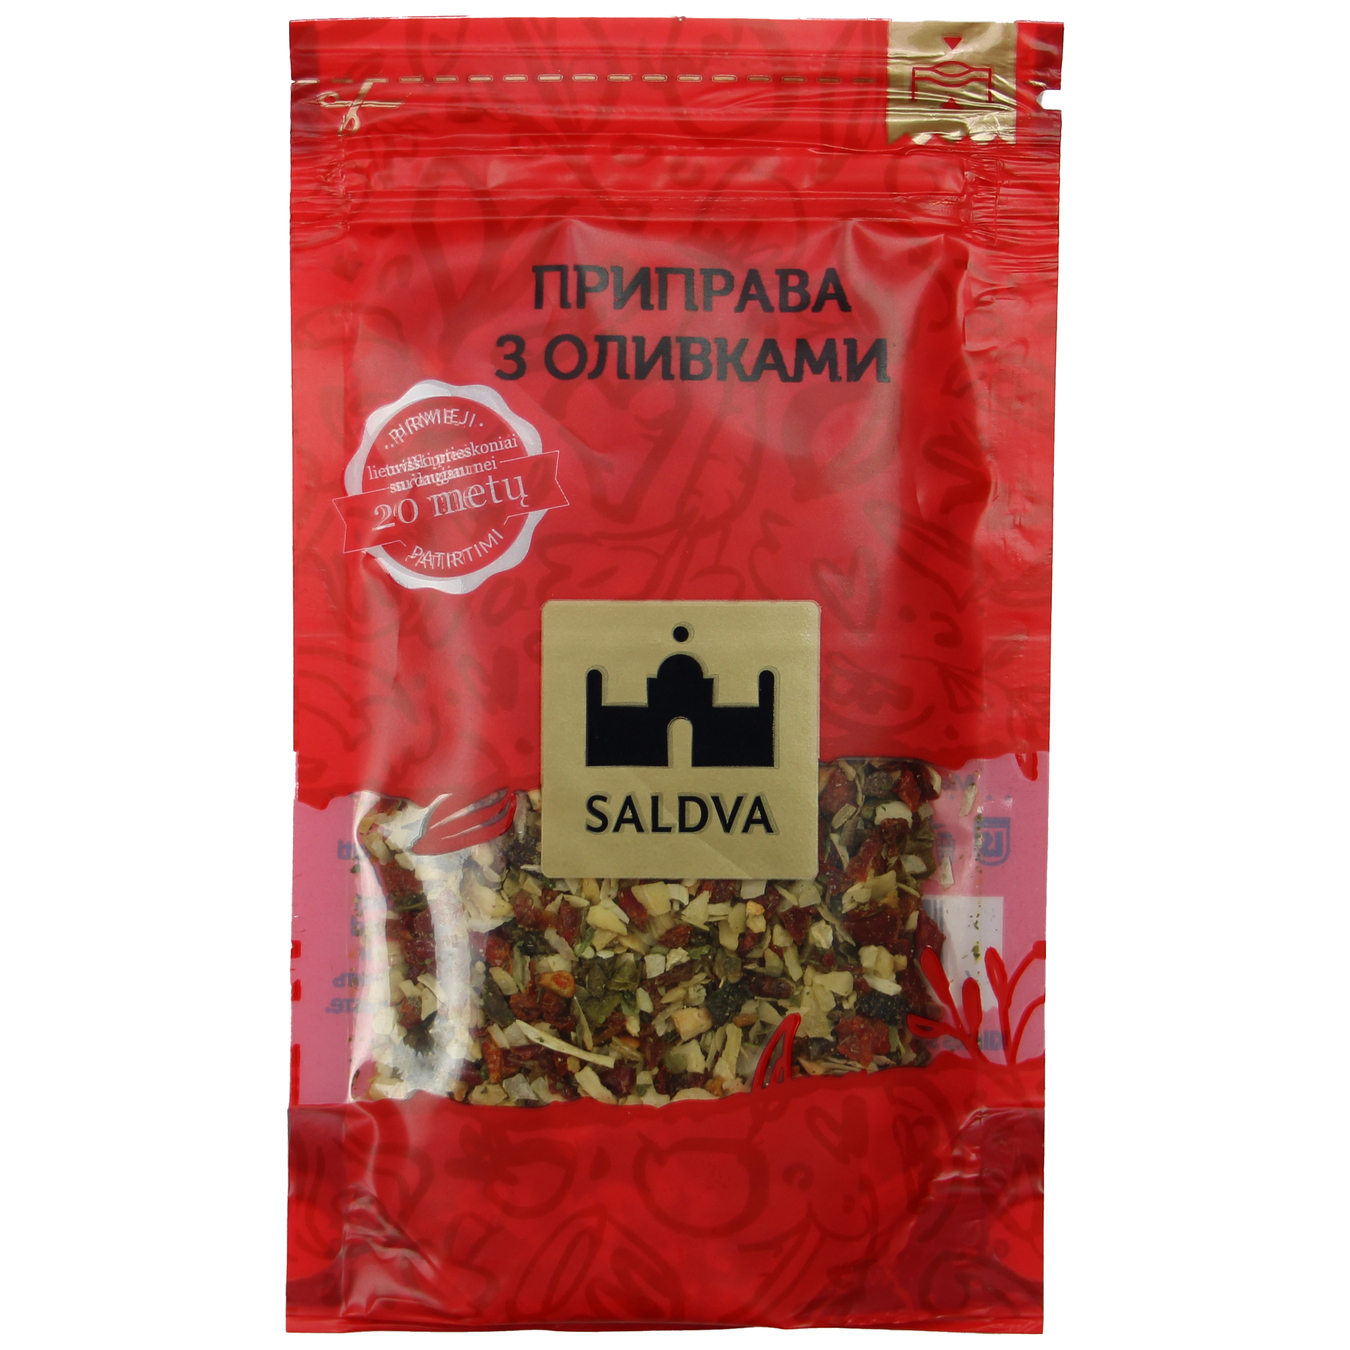 Saldva Spice with Olives 20g